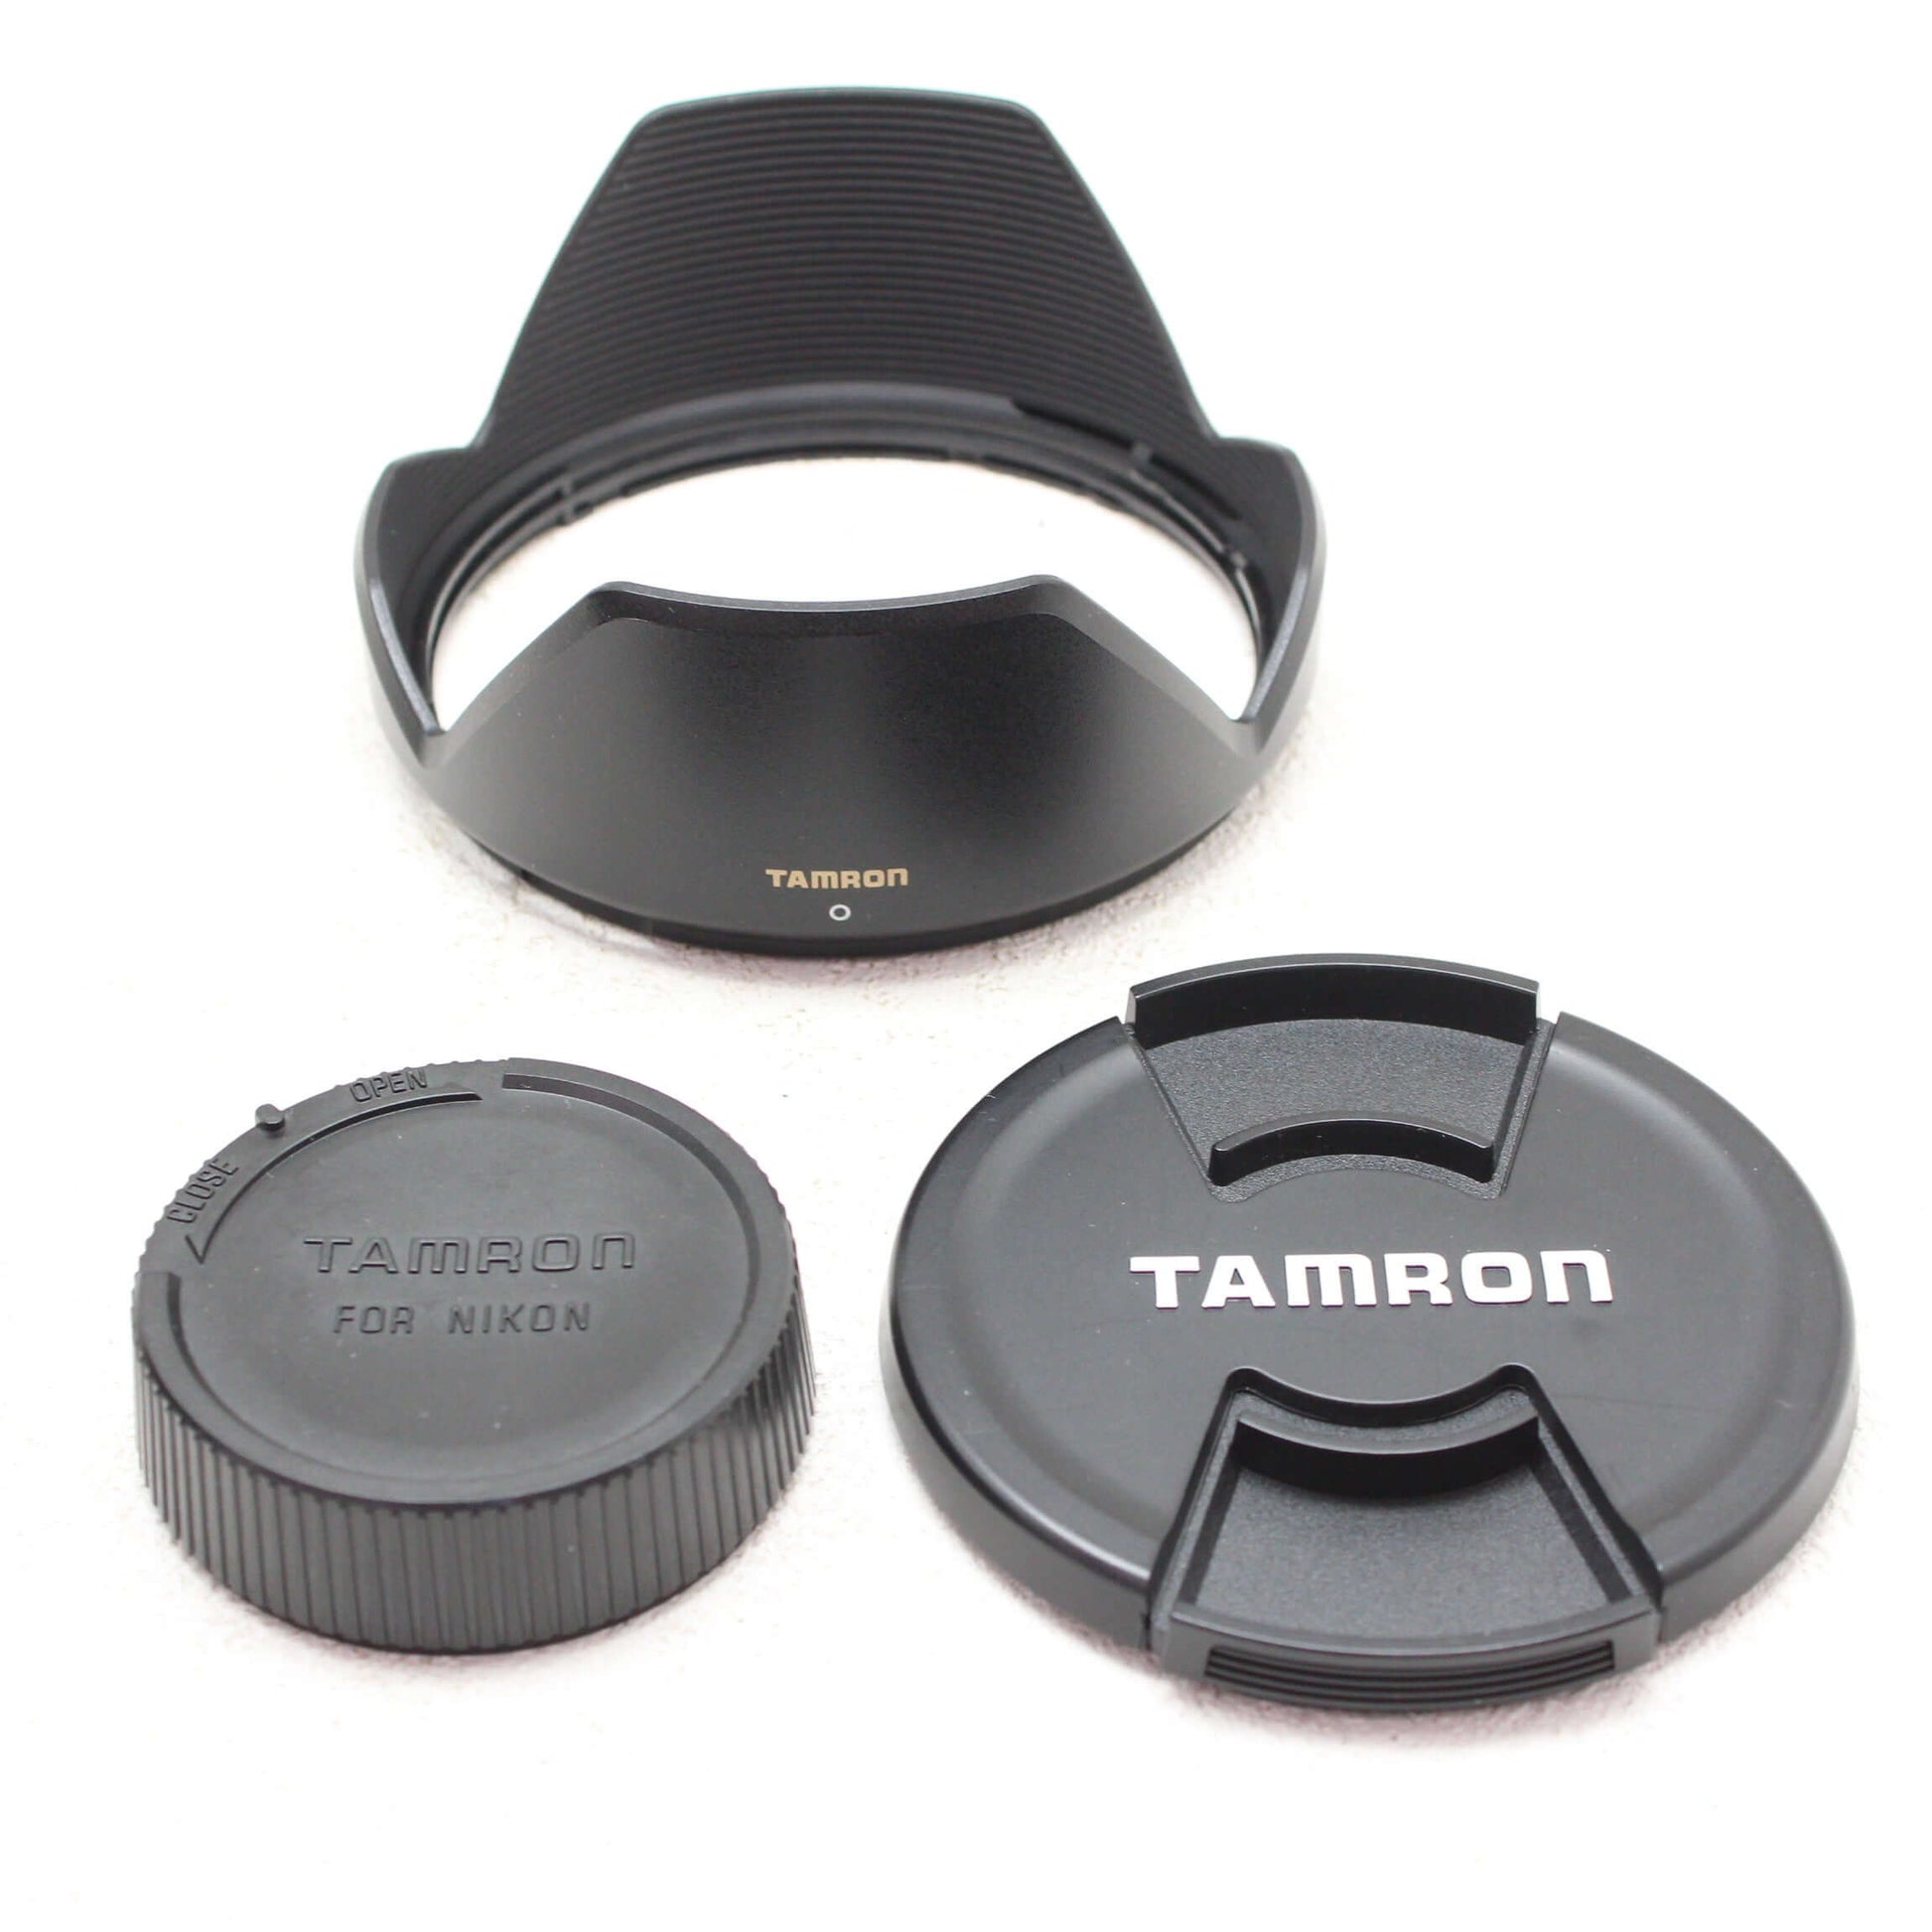 中古品 TAMRON SP 24-70mm F2.8 Di VC USD Nikon用【4月13日(土) youtube生配信でご紹介】